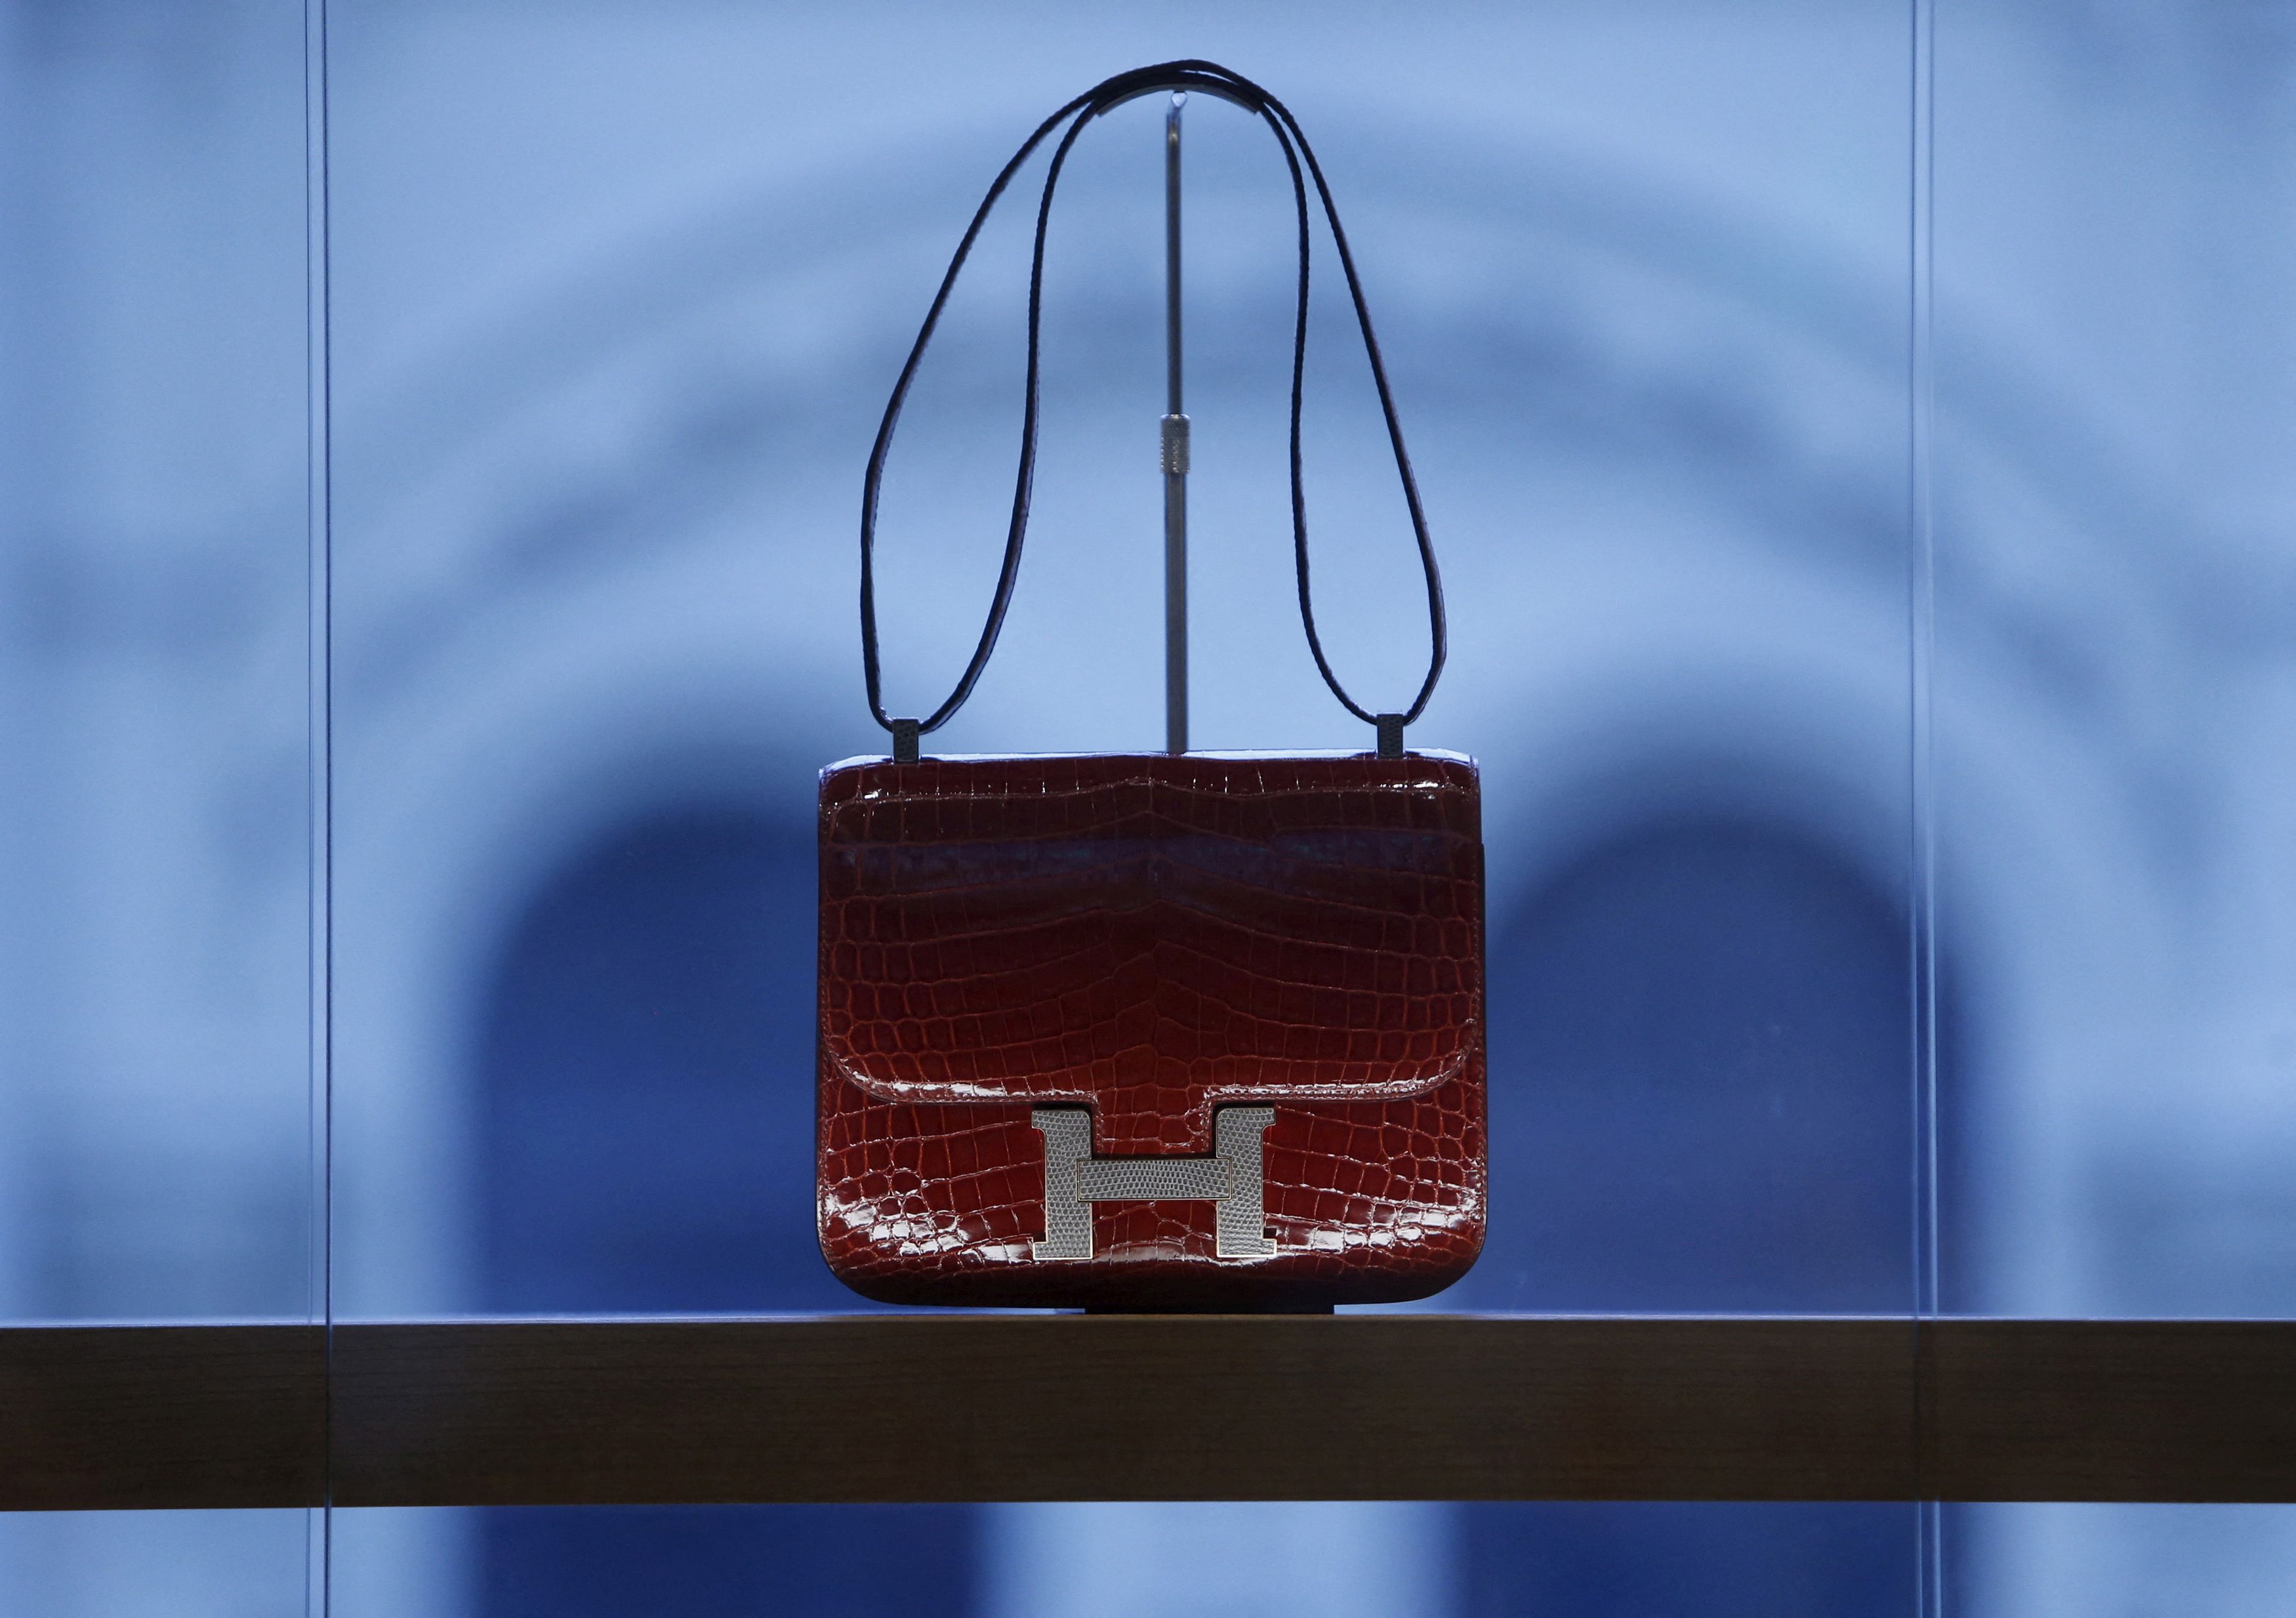 Hermès Birkin Bag Sells for Record $222,000 at Auction in Hong Kong